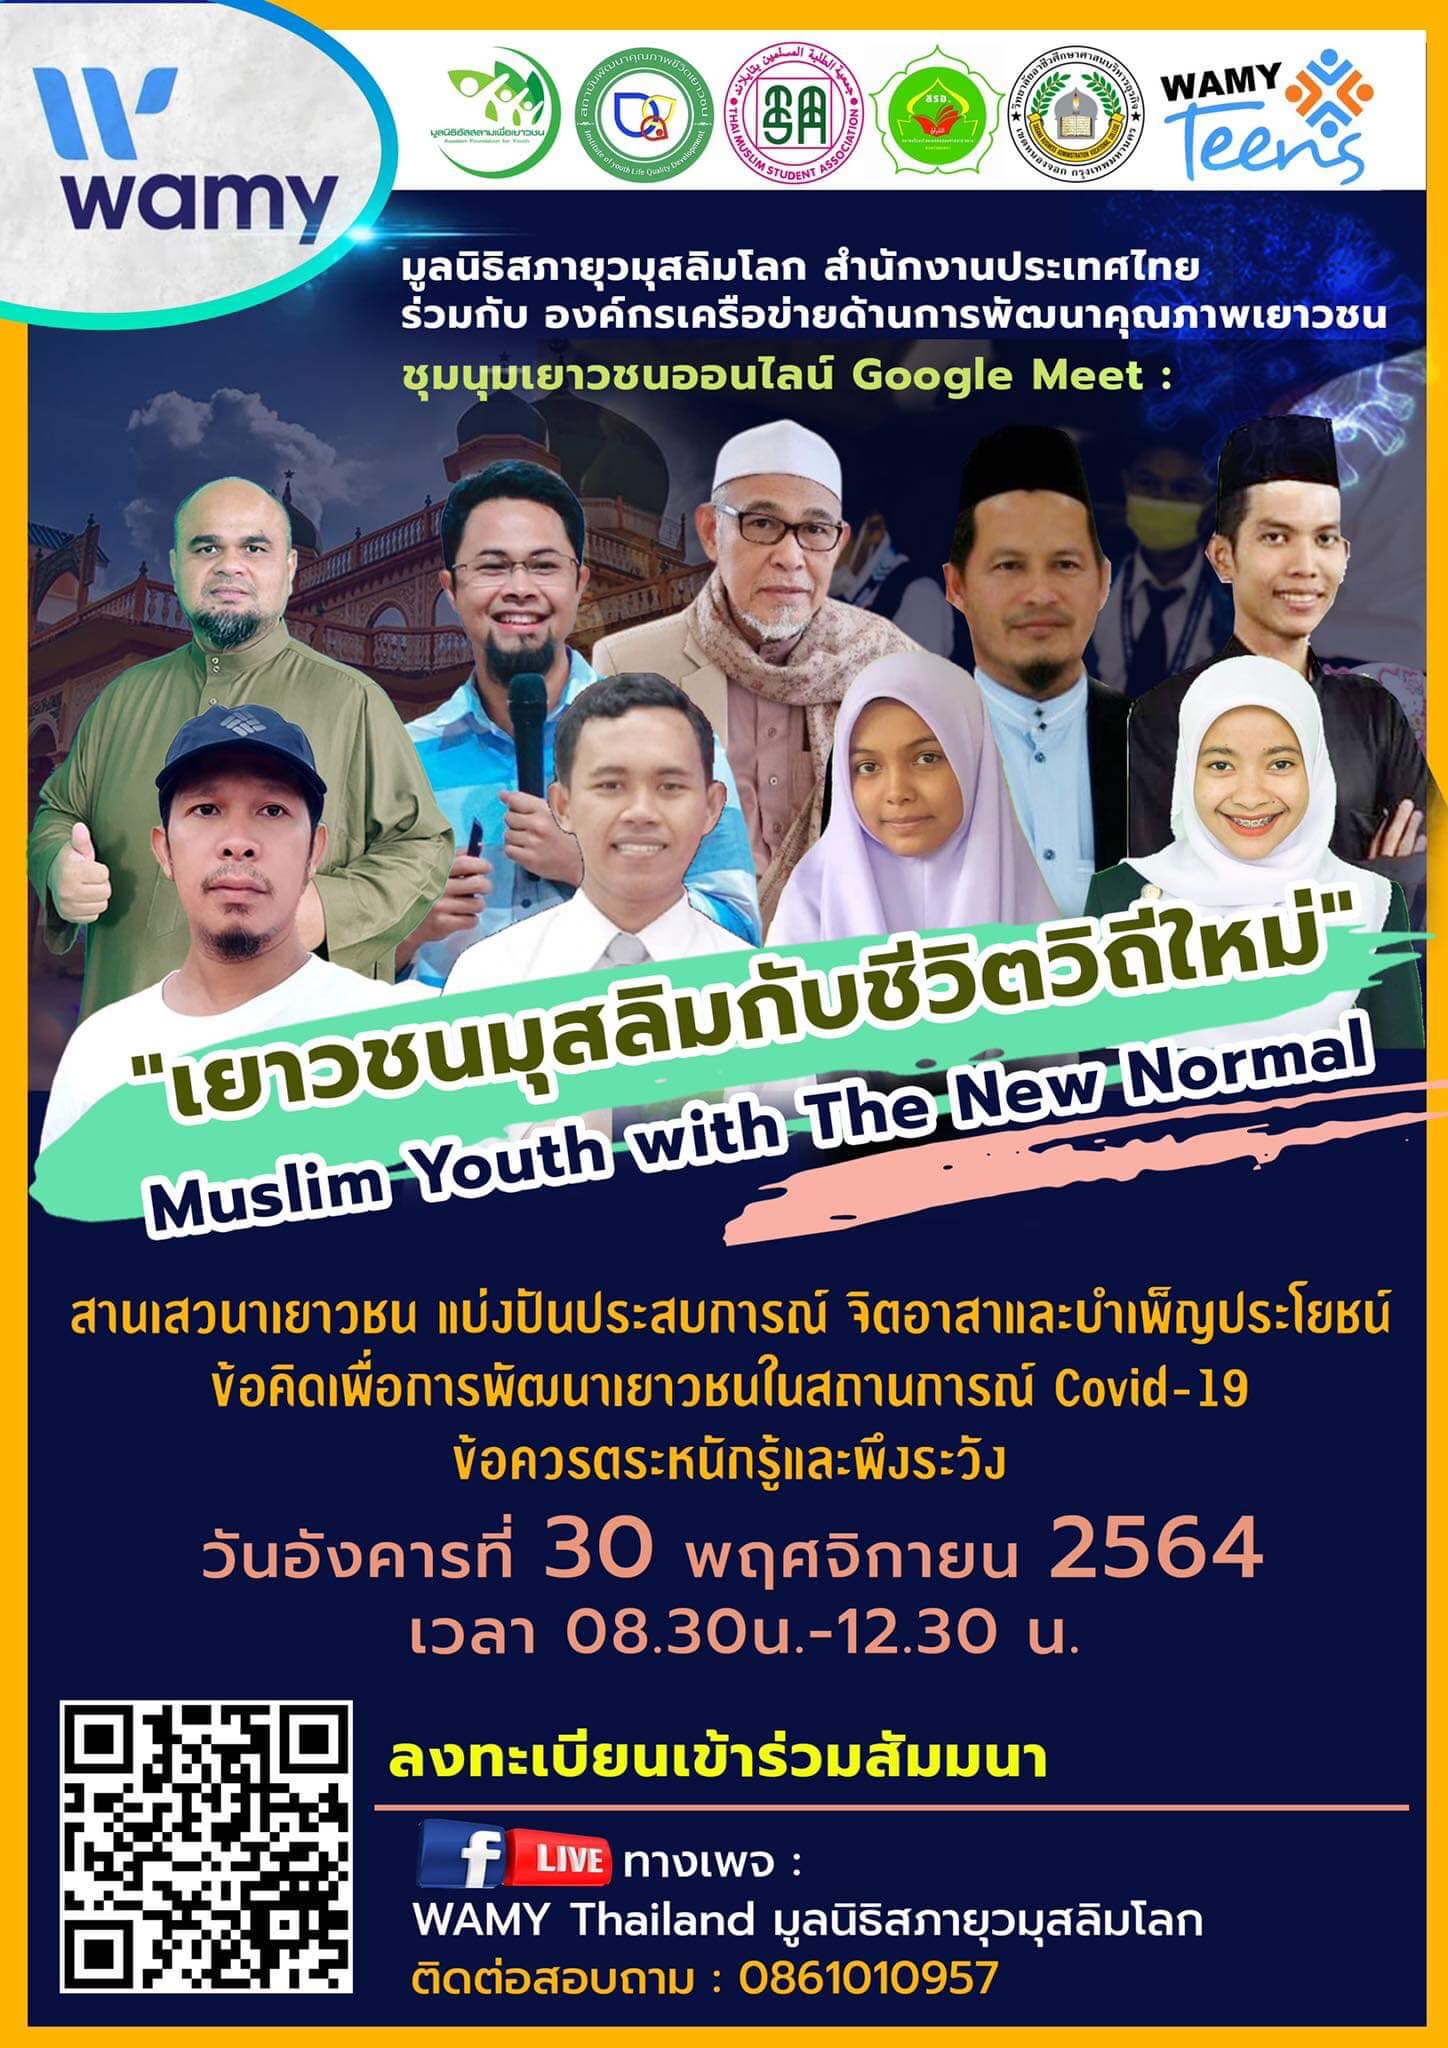 ขอเชิญเยาวชนและผู้สนใจเข้าร่วมสัมมนา ในหัวข้อ “เยาวชนมุสลิมกับชีวิตวิถีใหม่”